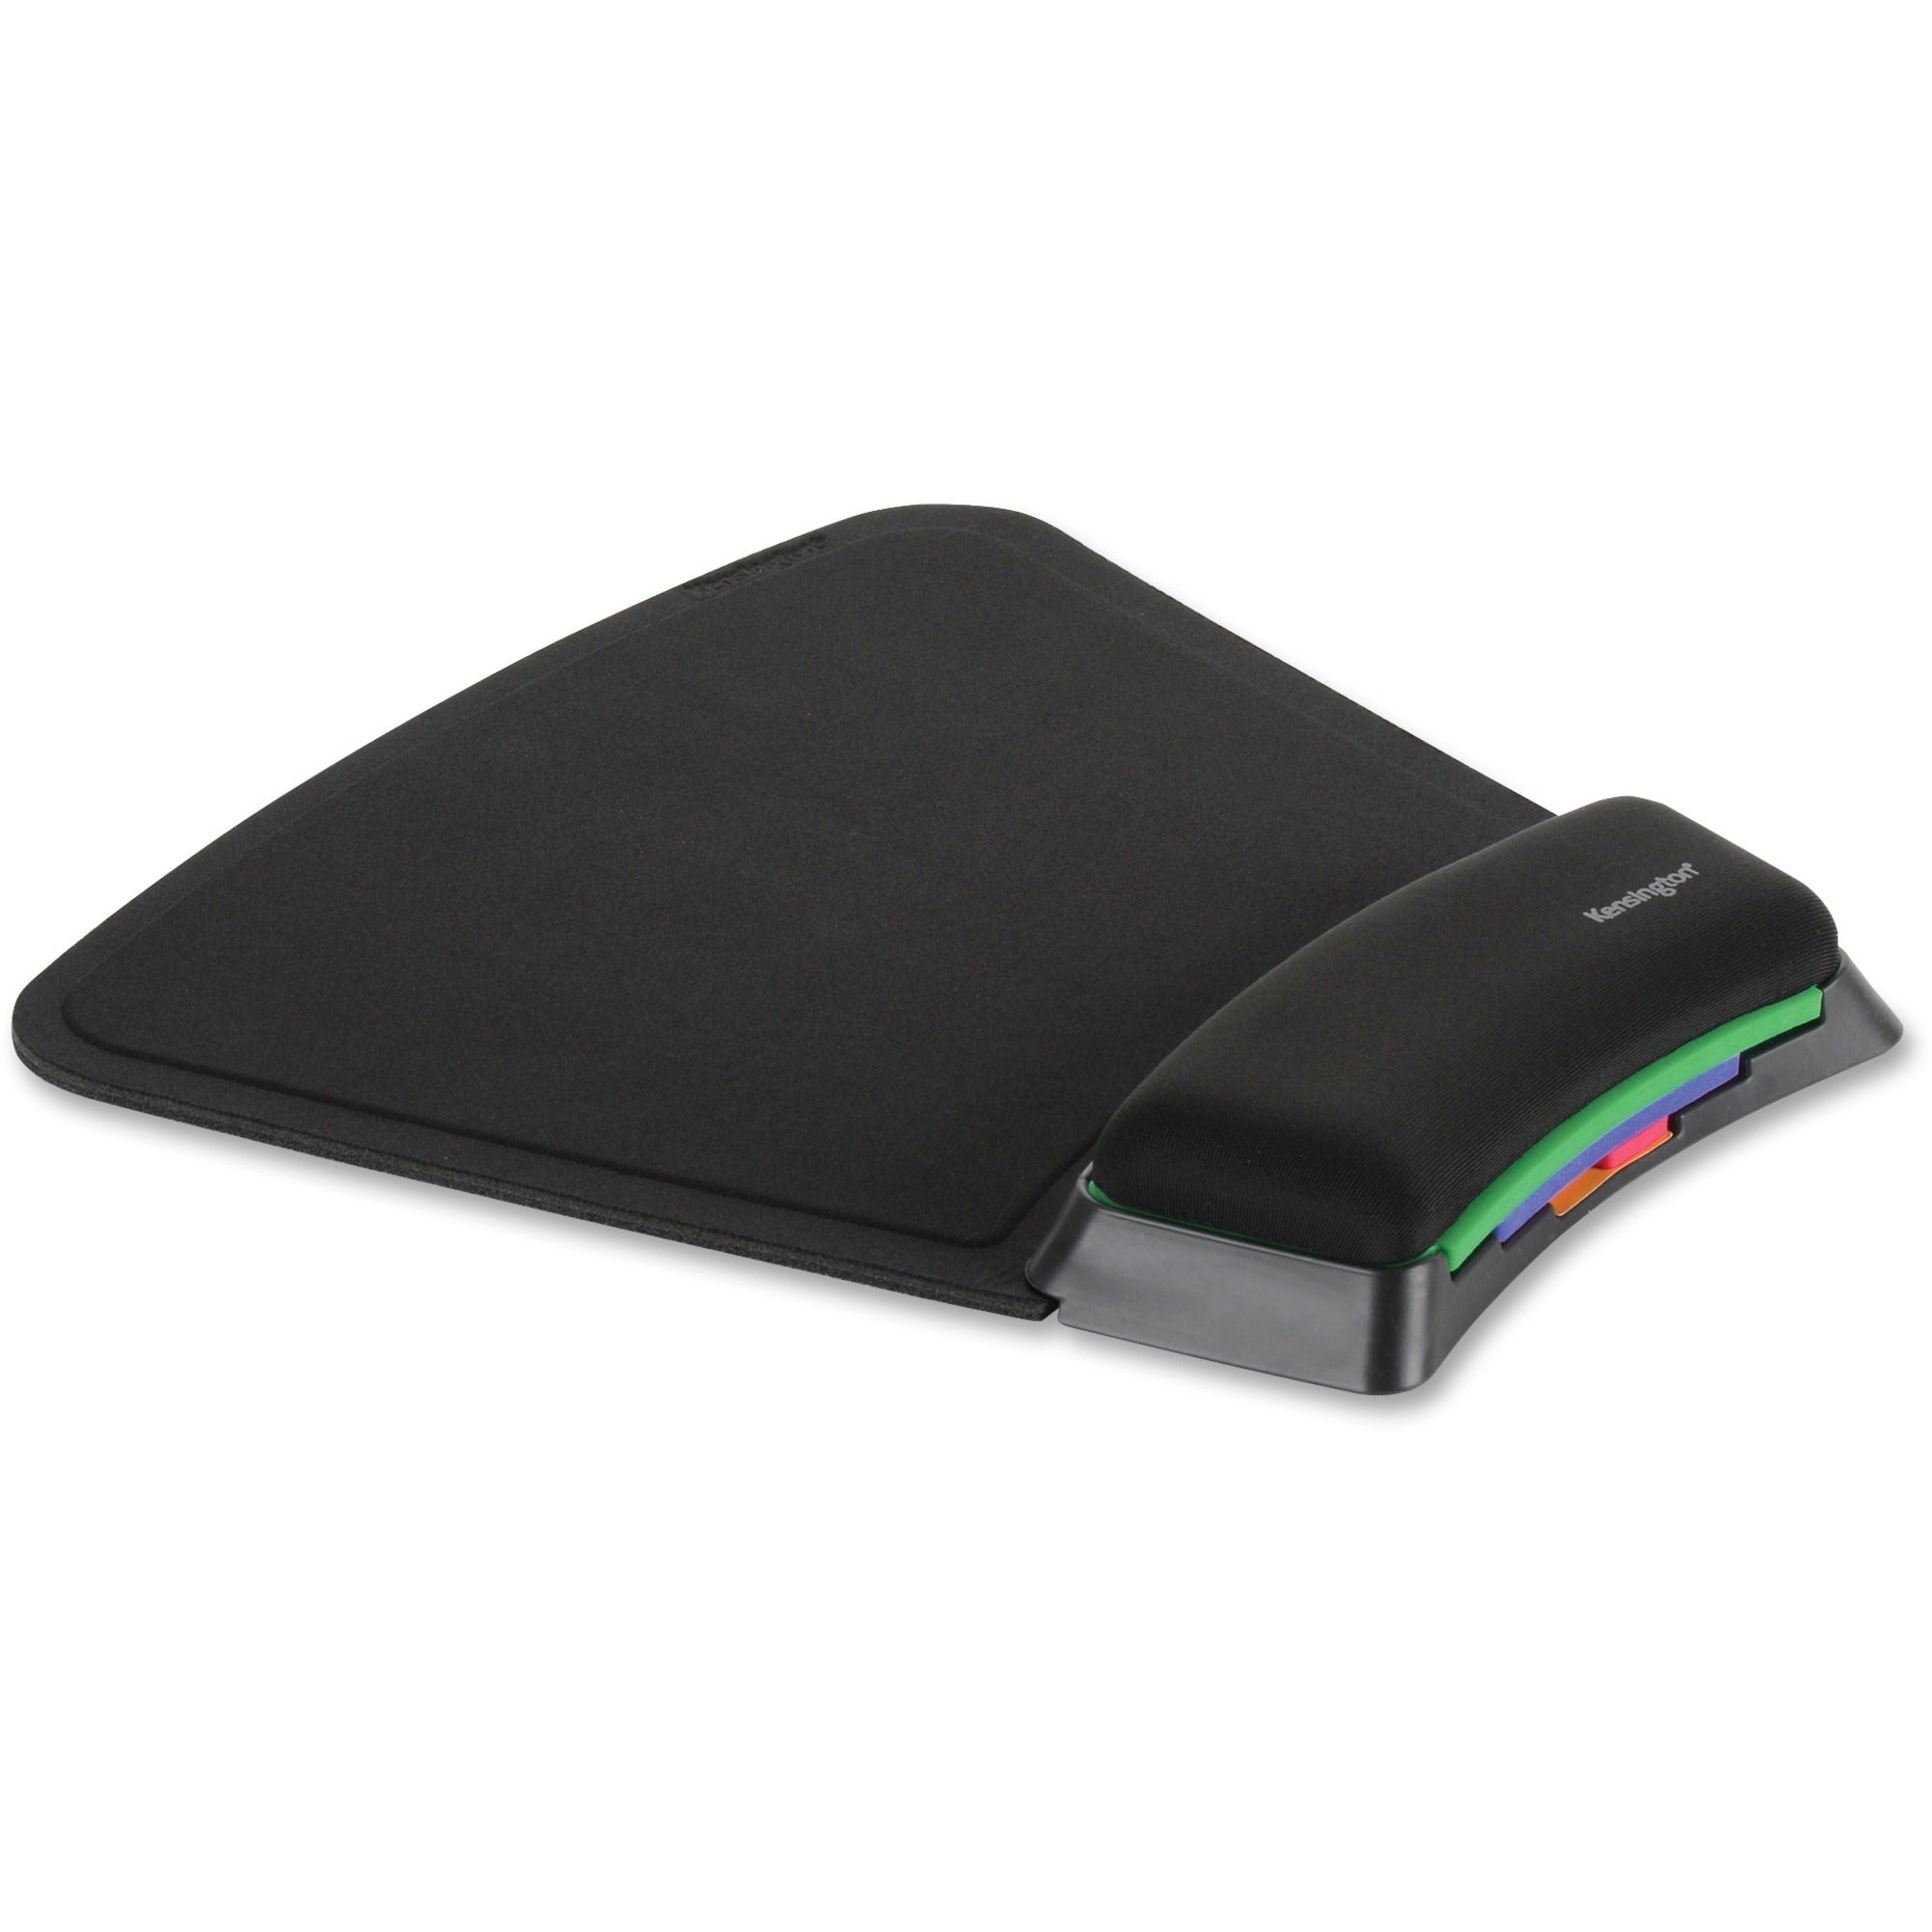 Kensington SmartFit Mouse Pad - 10.38" x 10.25" Dimension - Black - Gel, Fabric - 1 Pack - 